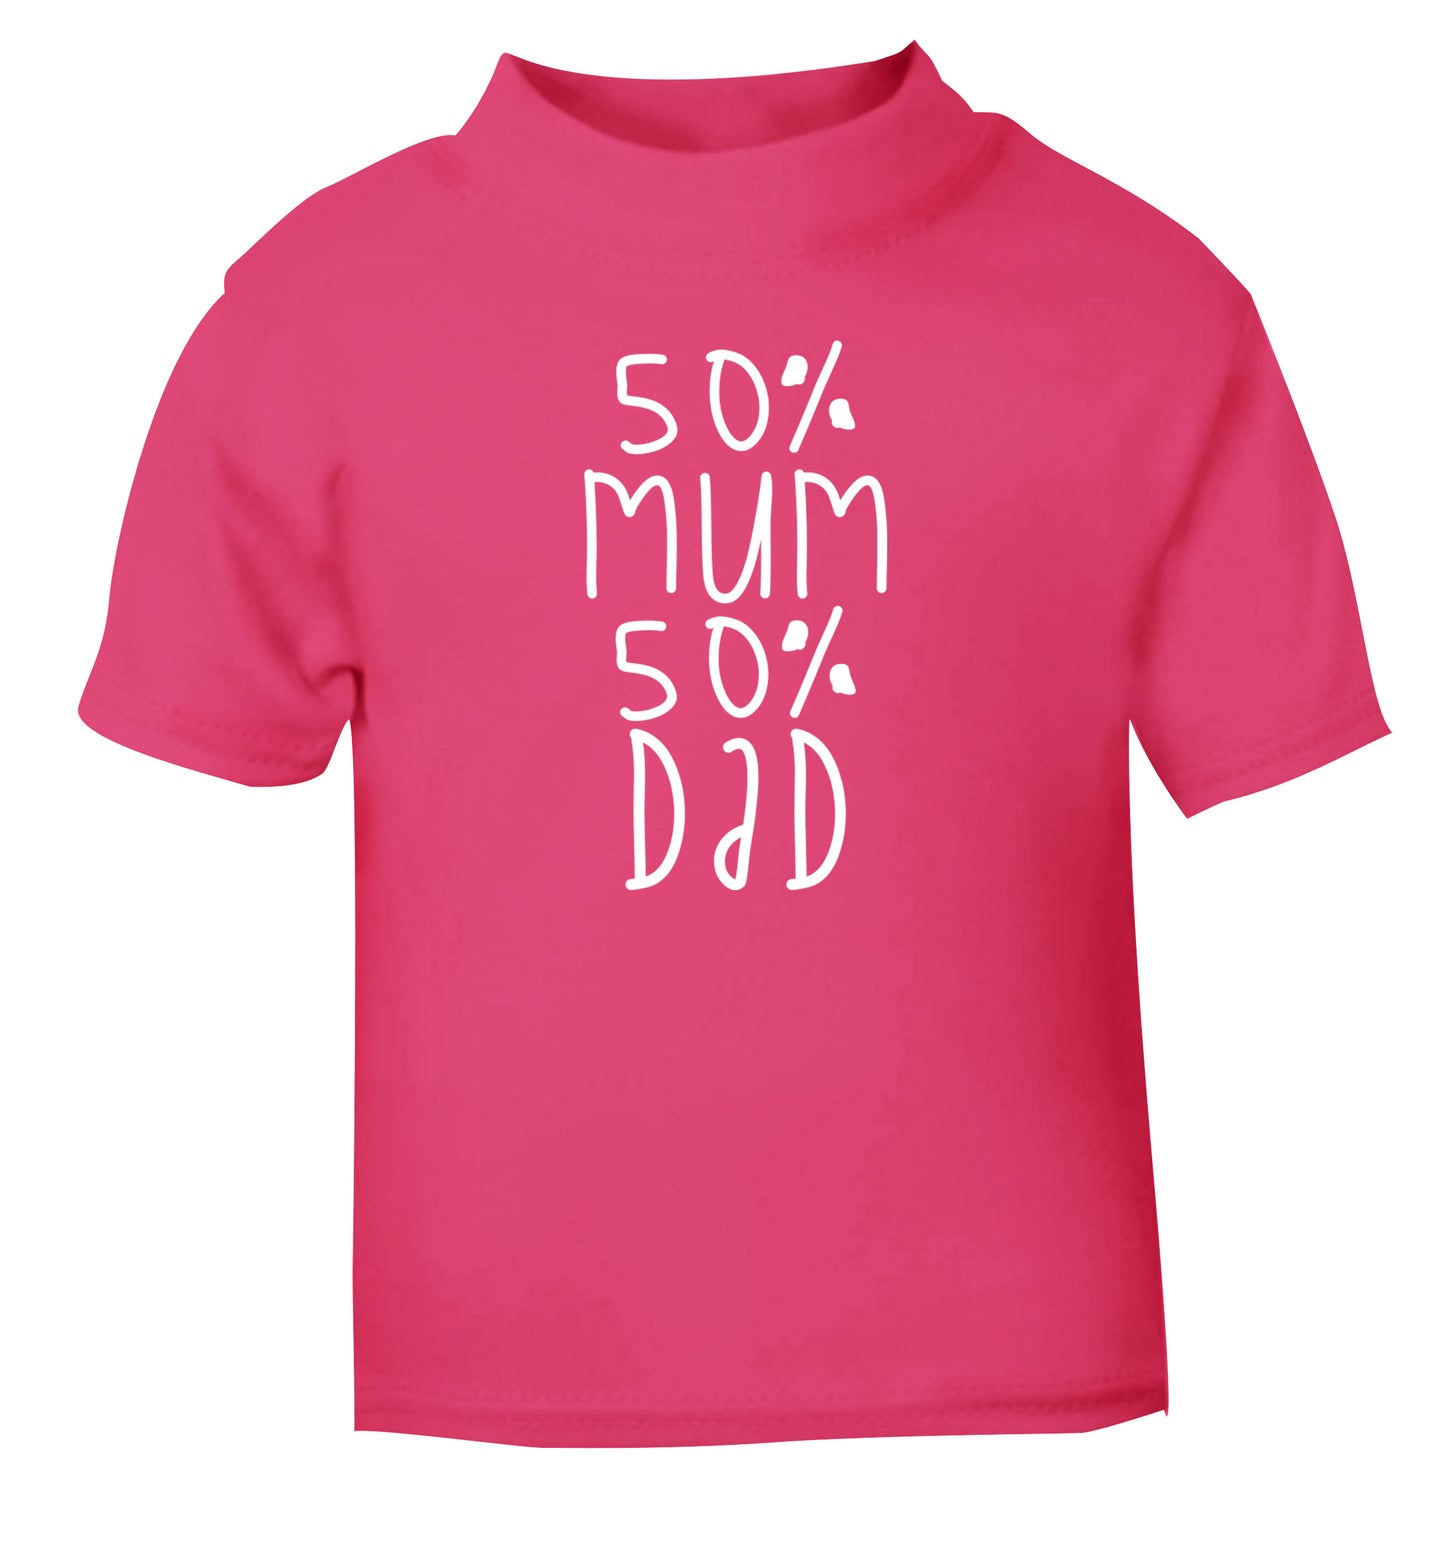 50% mum 50% dad pink Baby Toddler Tshirt 2 Years